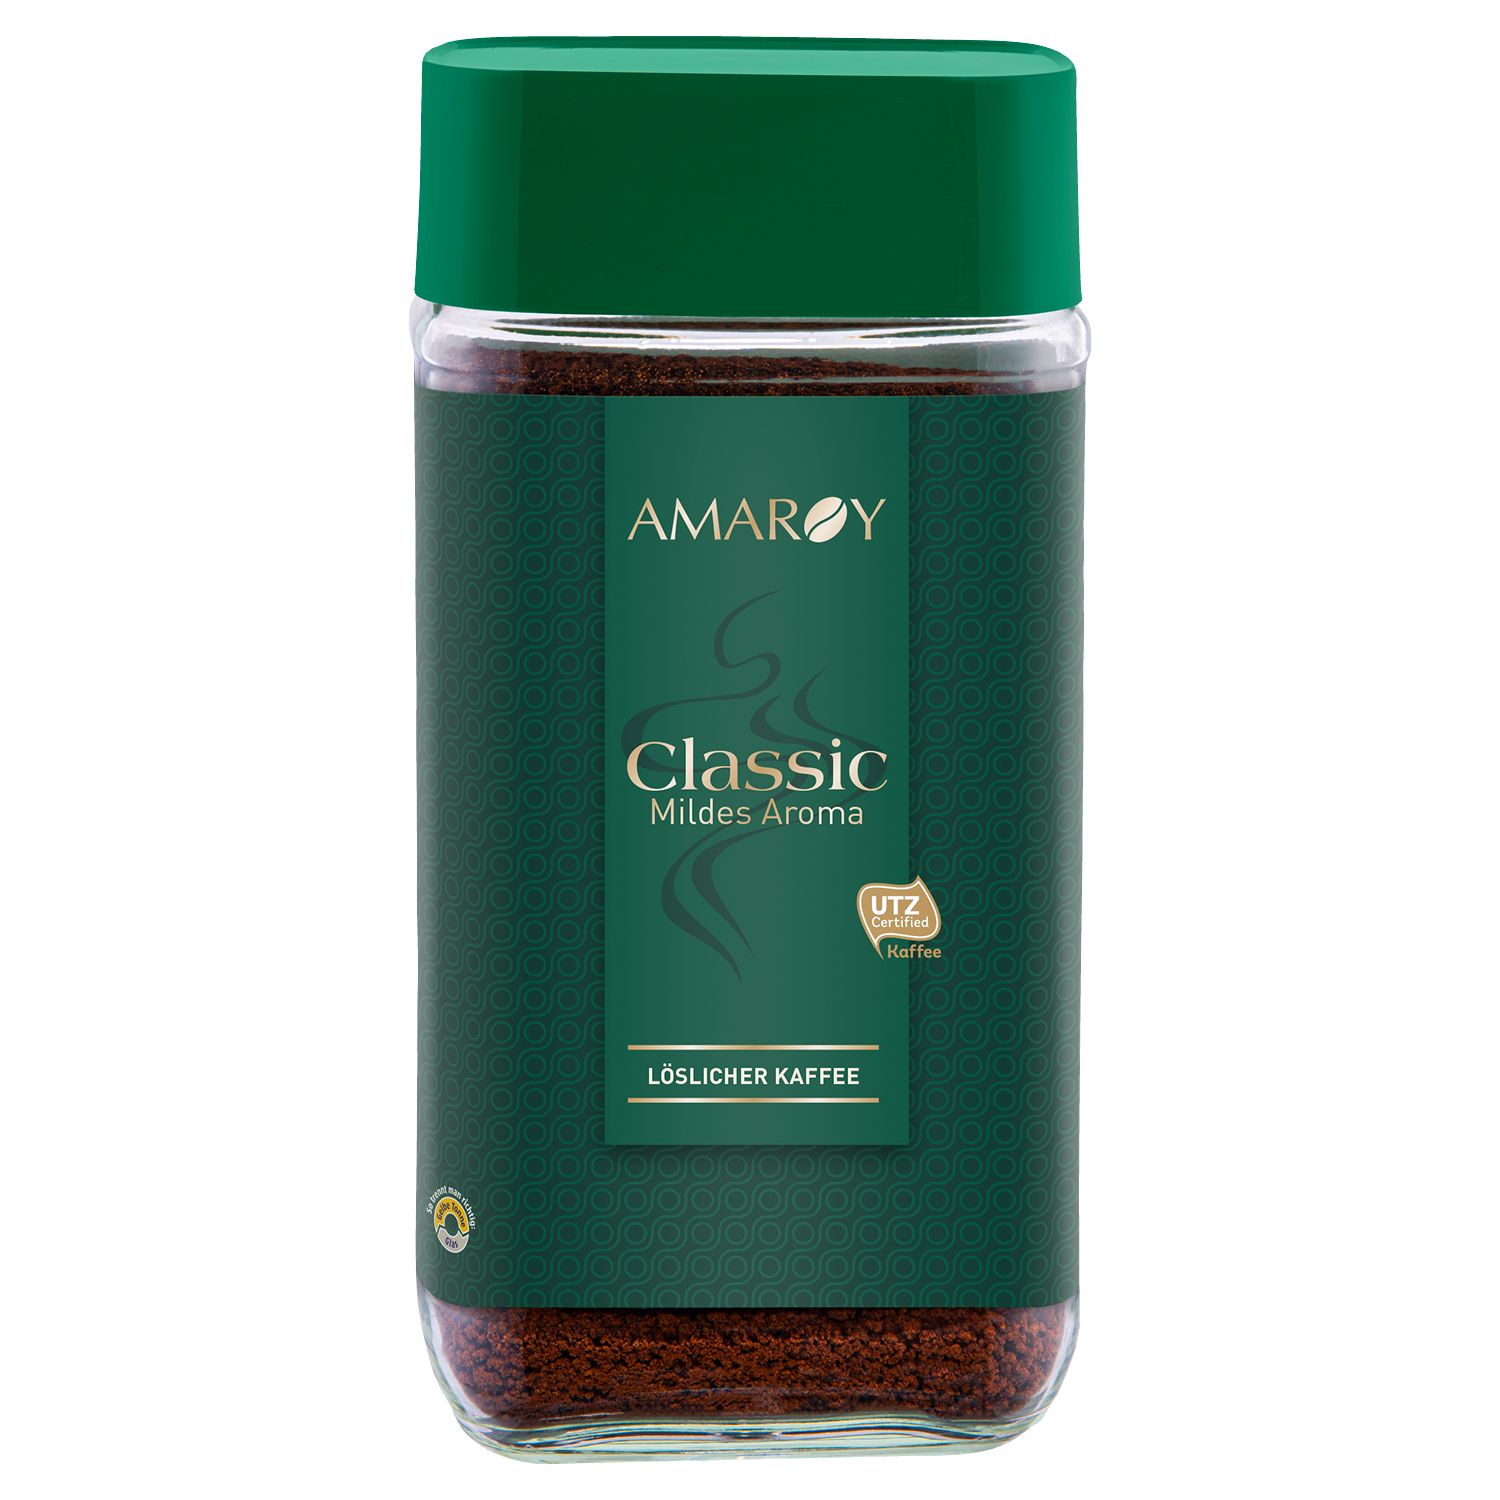 Amaroy Express Kaffee Classic mildes Aroma instantní káva 200g